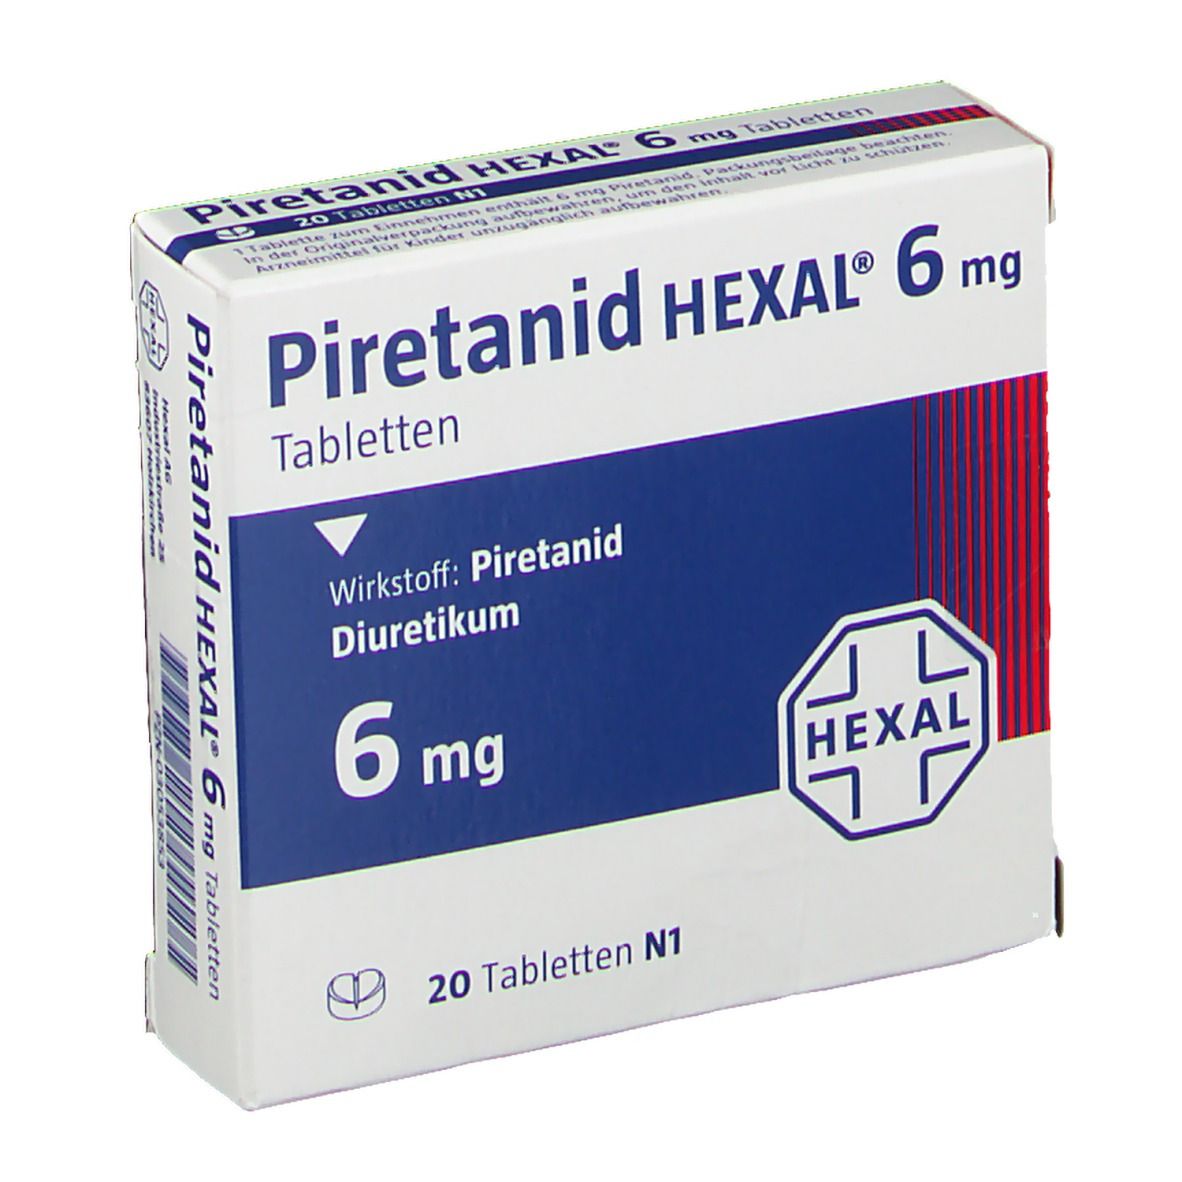 Piretanid HEXAL® 6 mg